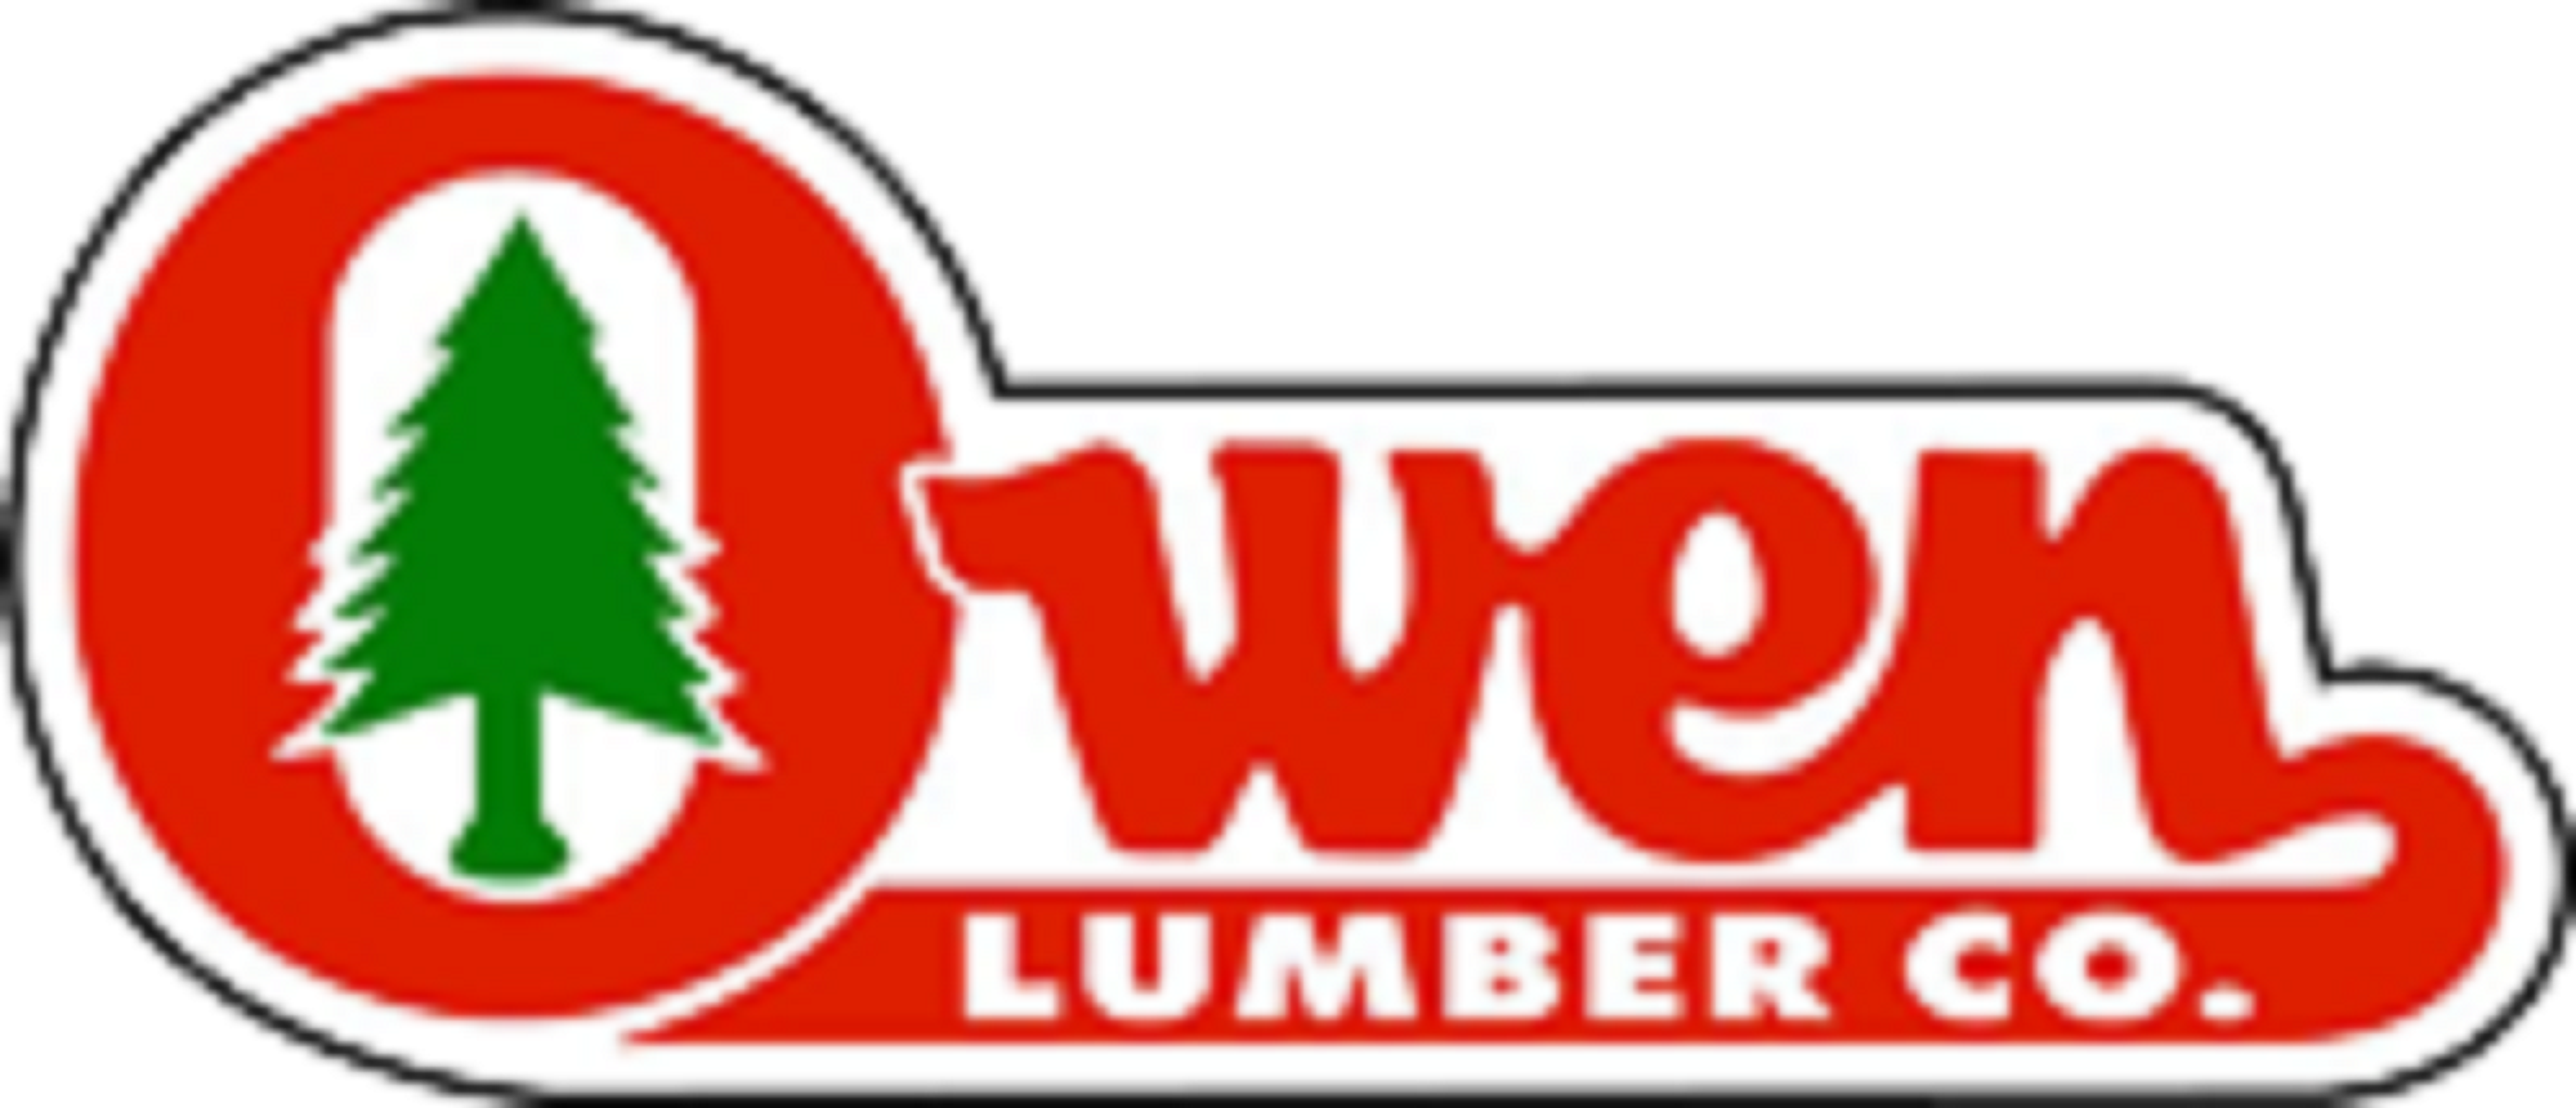 Owen Lumber Co. Belton (816)331-2211